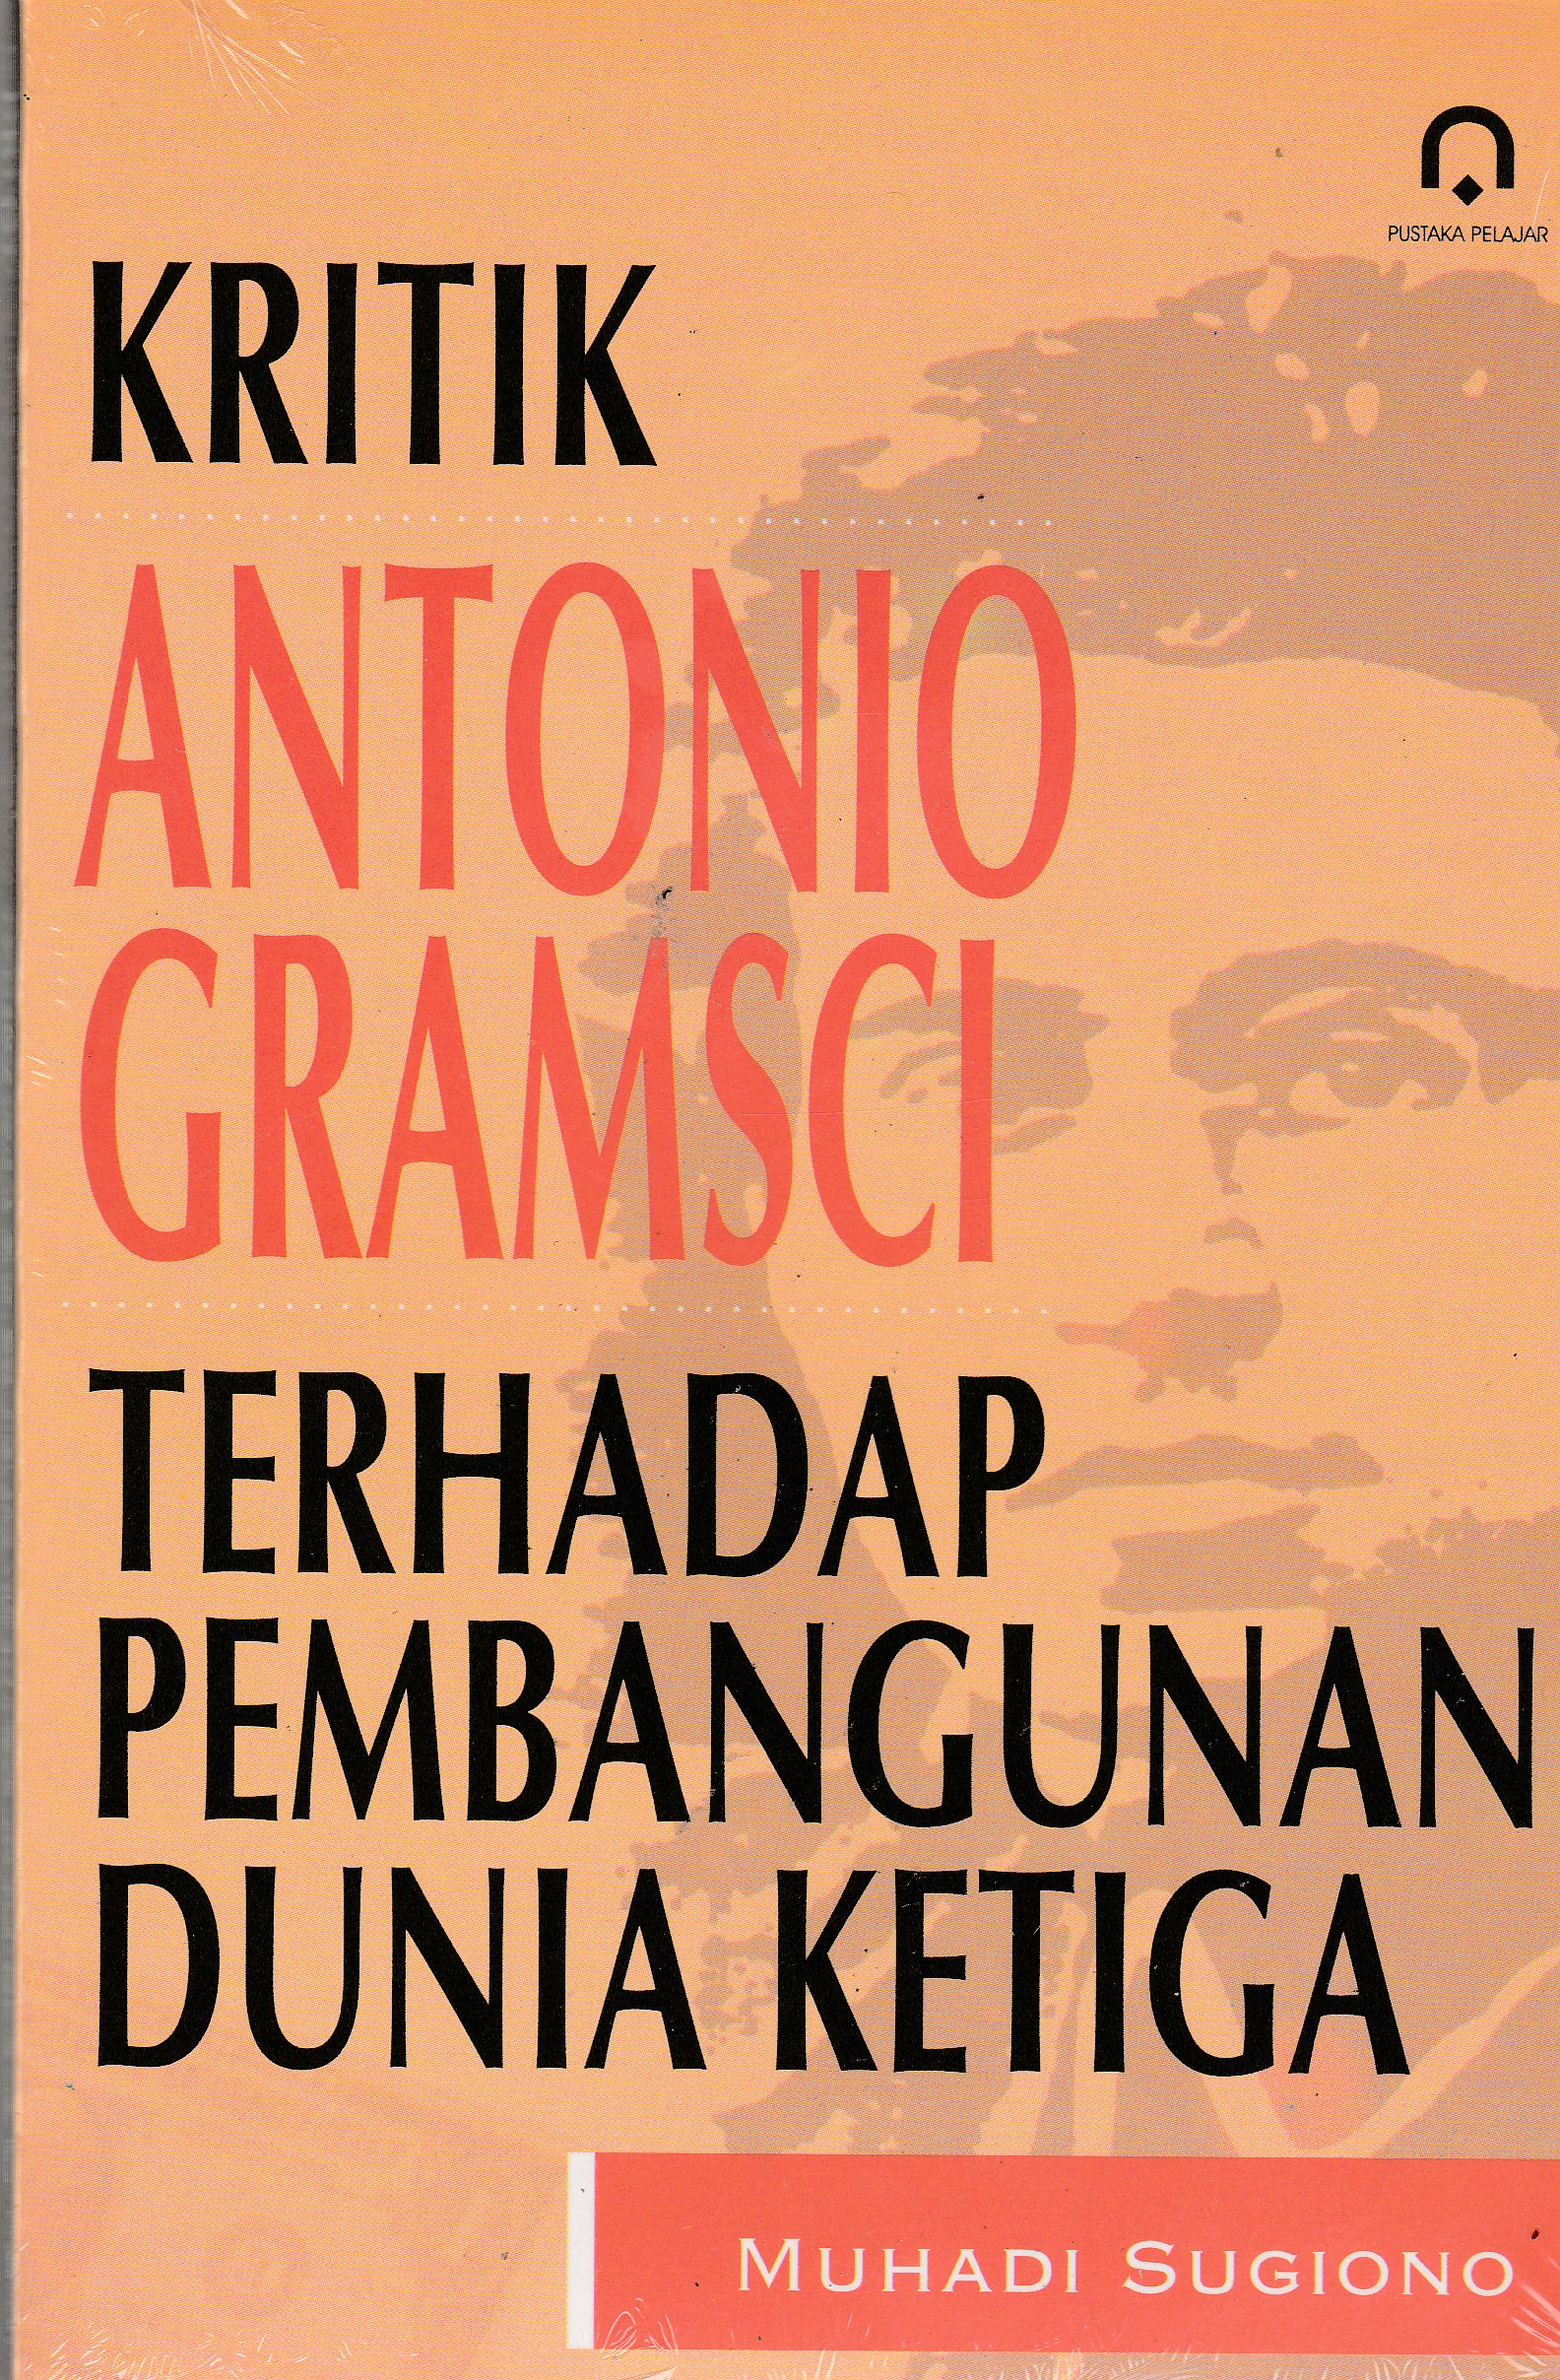 Kritik Antonio Gramsci terhadap Pembangunan Dunia Ketiga